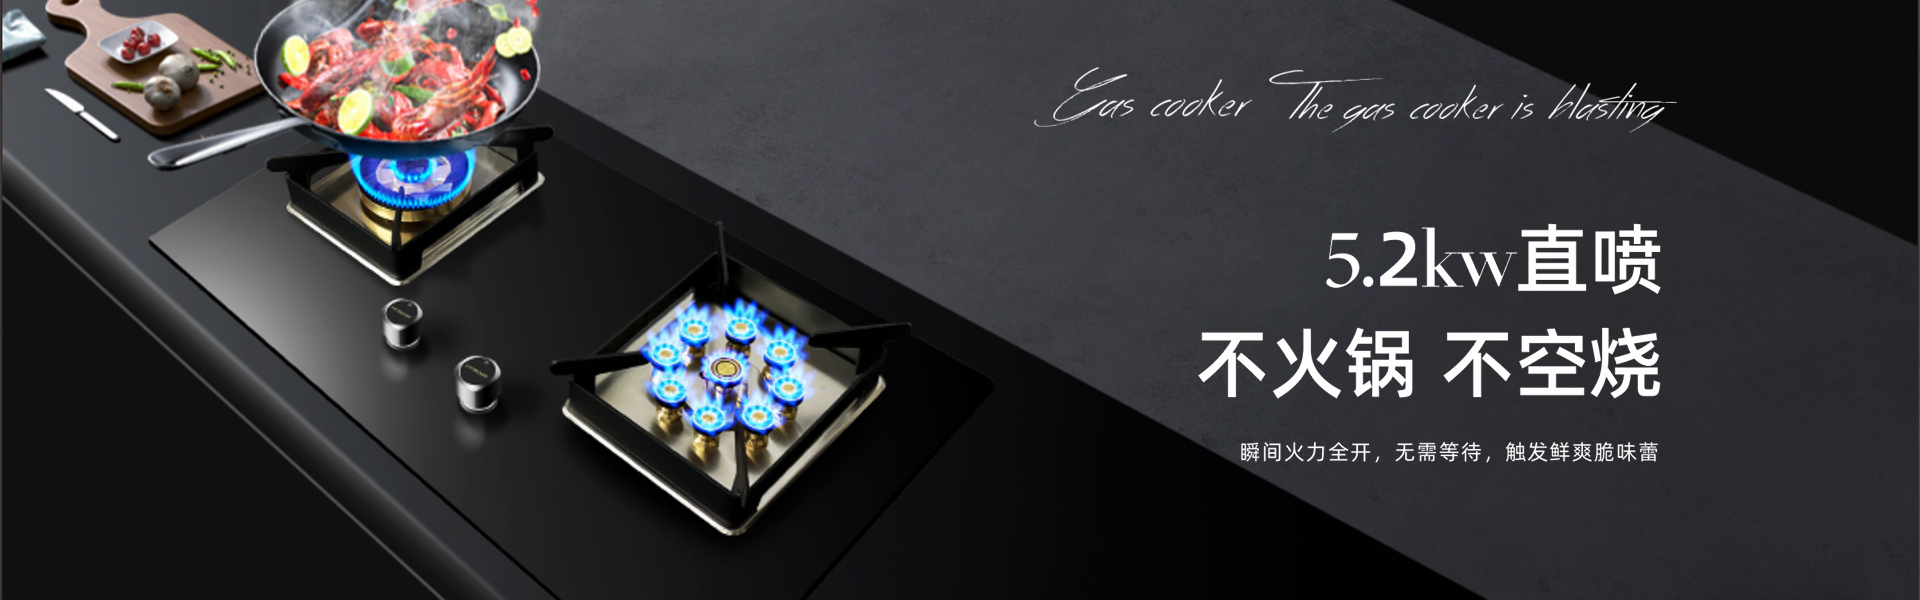 中国厨卫电器十大品牌-大吸力吸油烟机